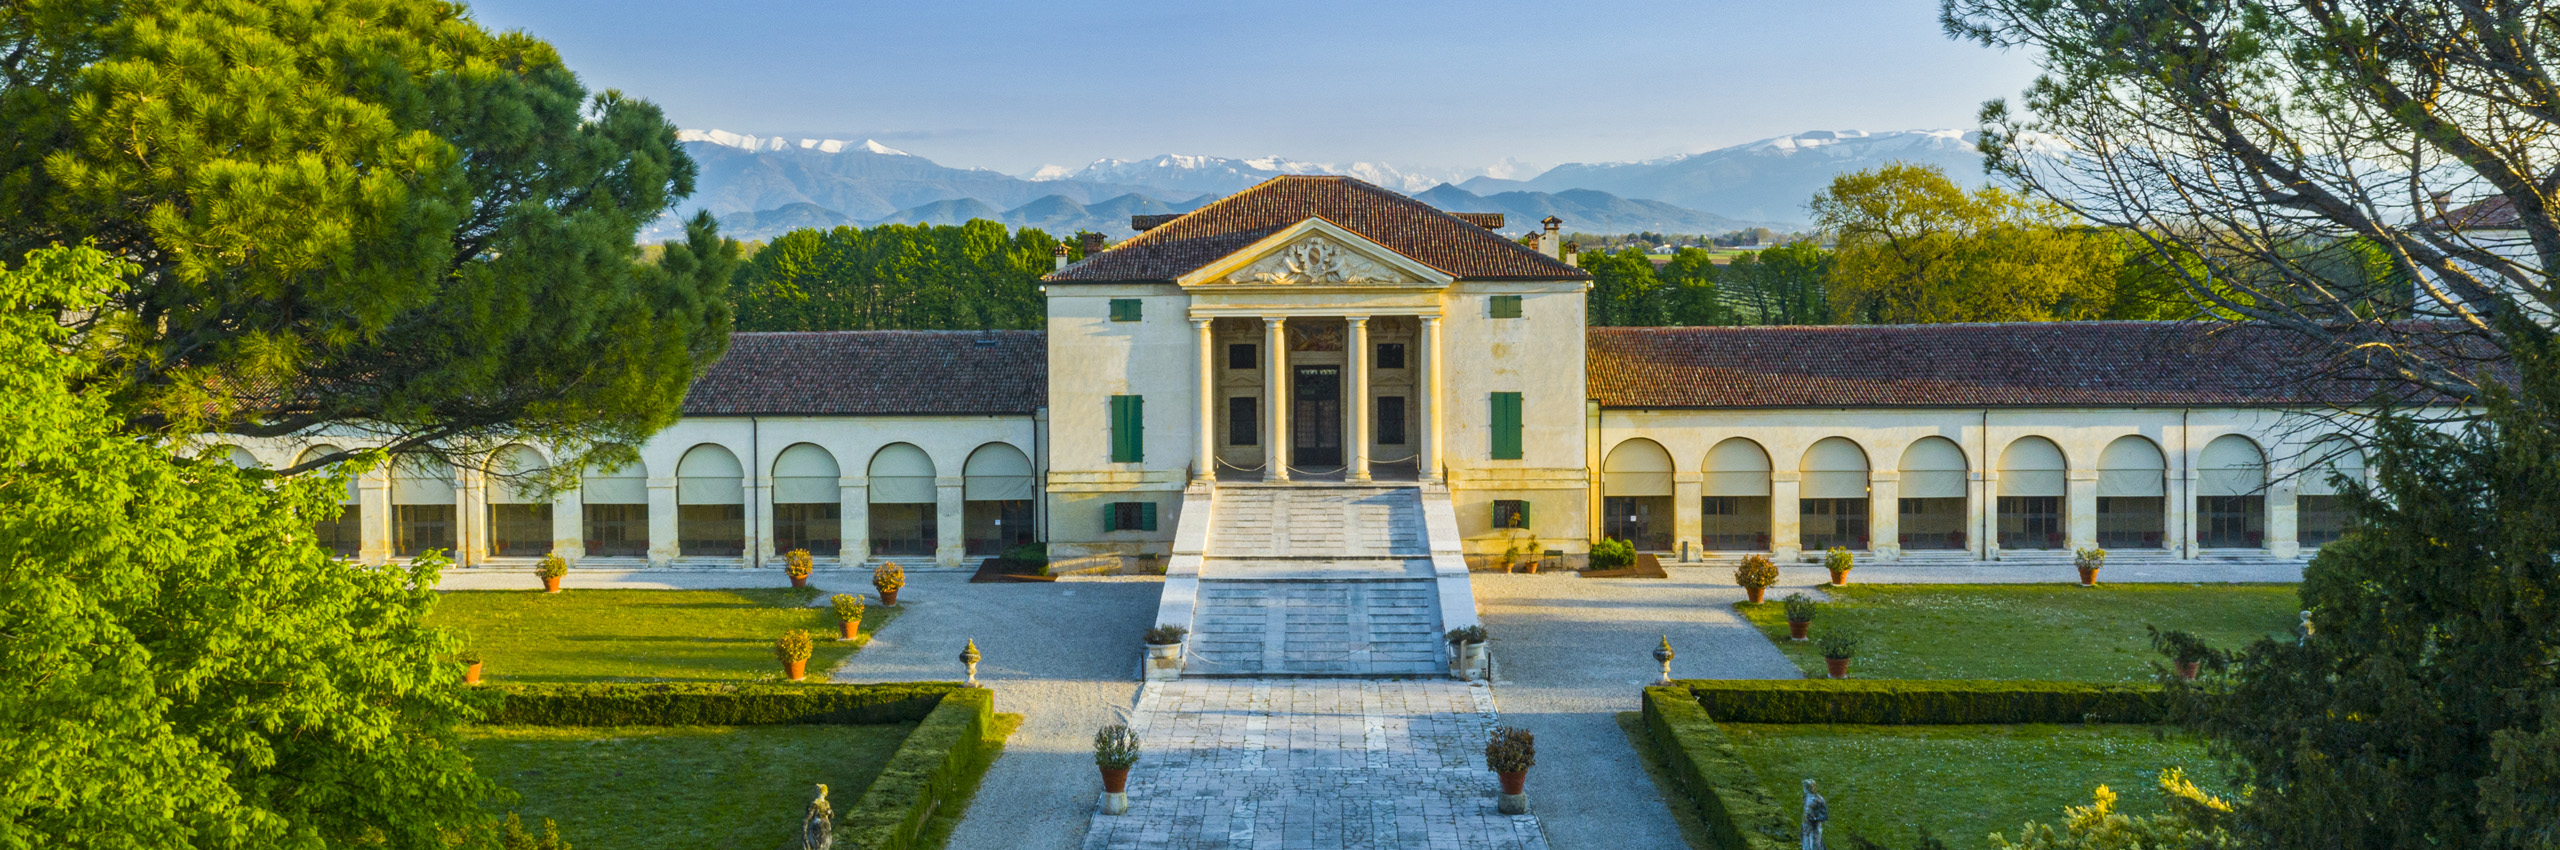 SIM-1146222 | Italy/Veneto, Treviso district, Fanzolo di Vedelago, Villa Emo | © Manfred Bortoli/SIME